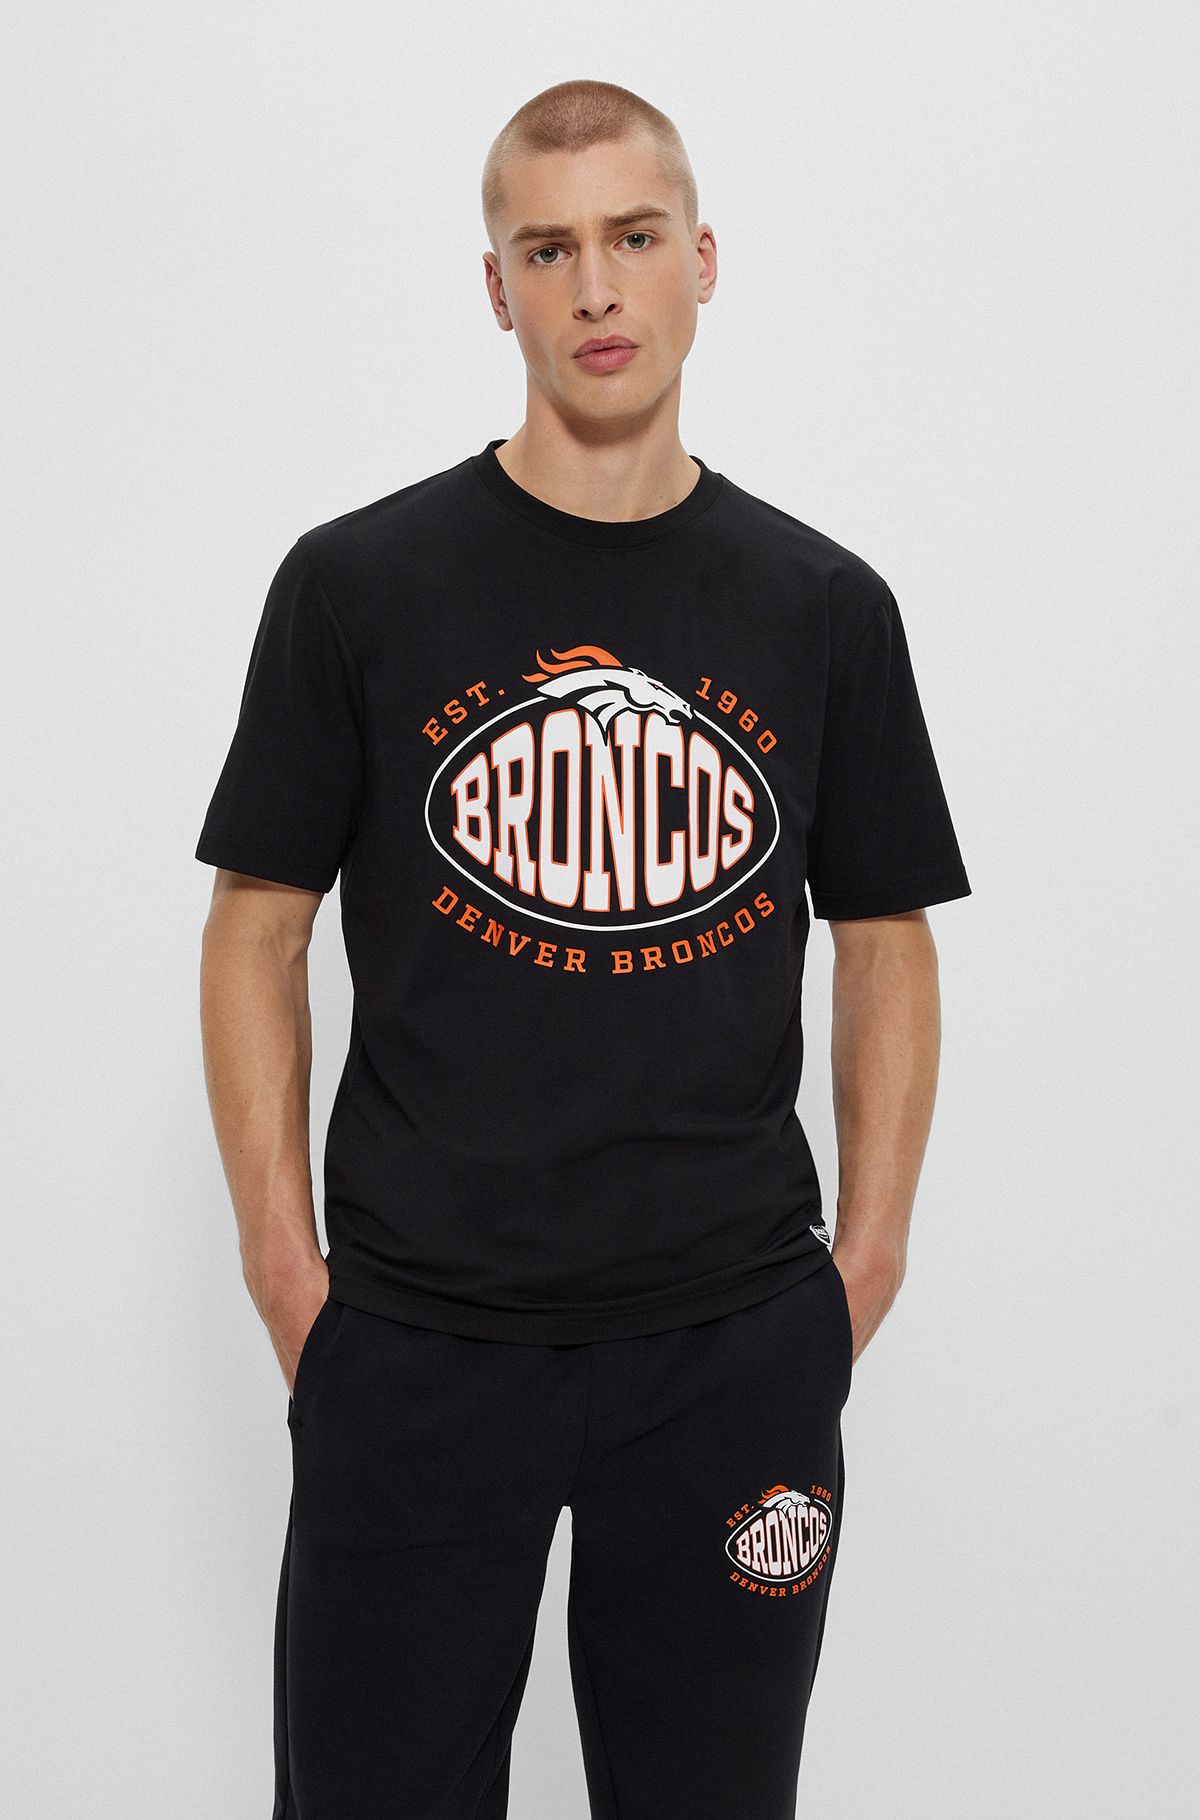  T-shirt en coton stretch BOSS x NFL avec logo du partenariat, Broncos